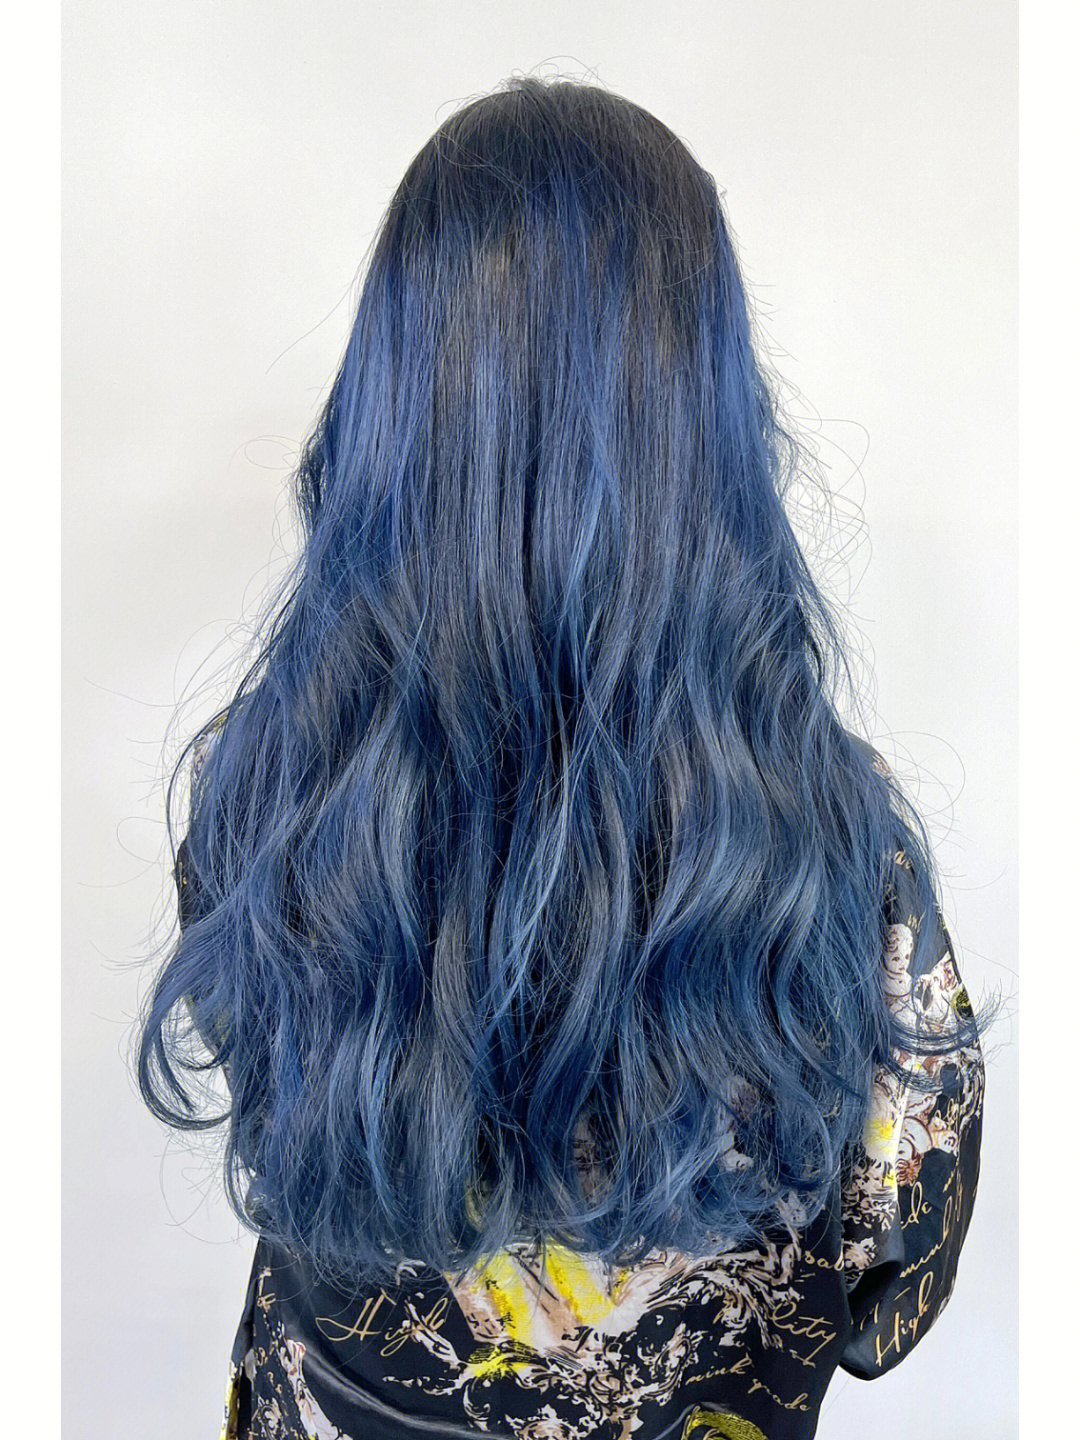 蓝黑色头发适合什么肤色蓝黑色其实就是黑色中带点蓝色调的染发颜色